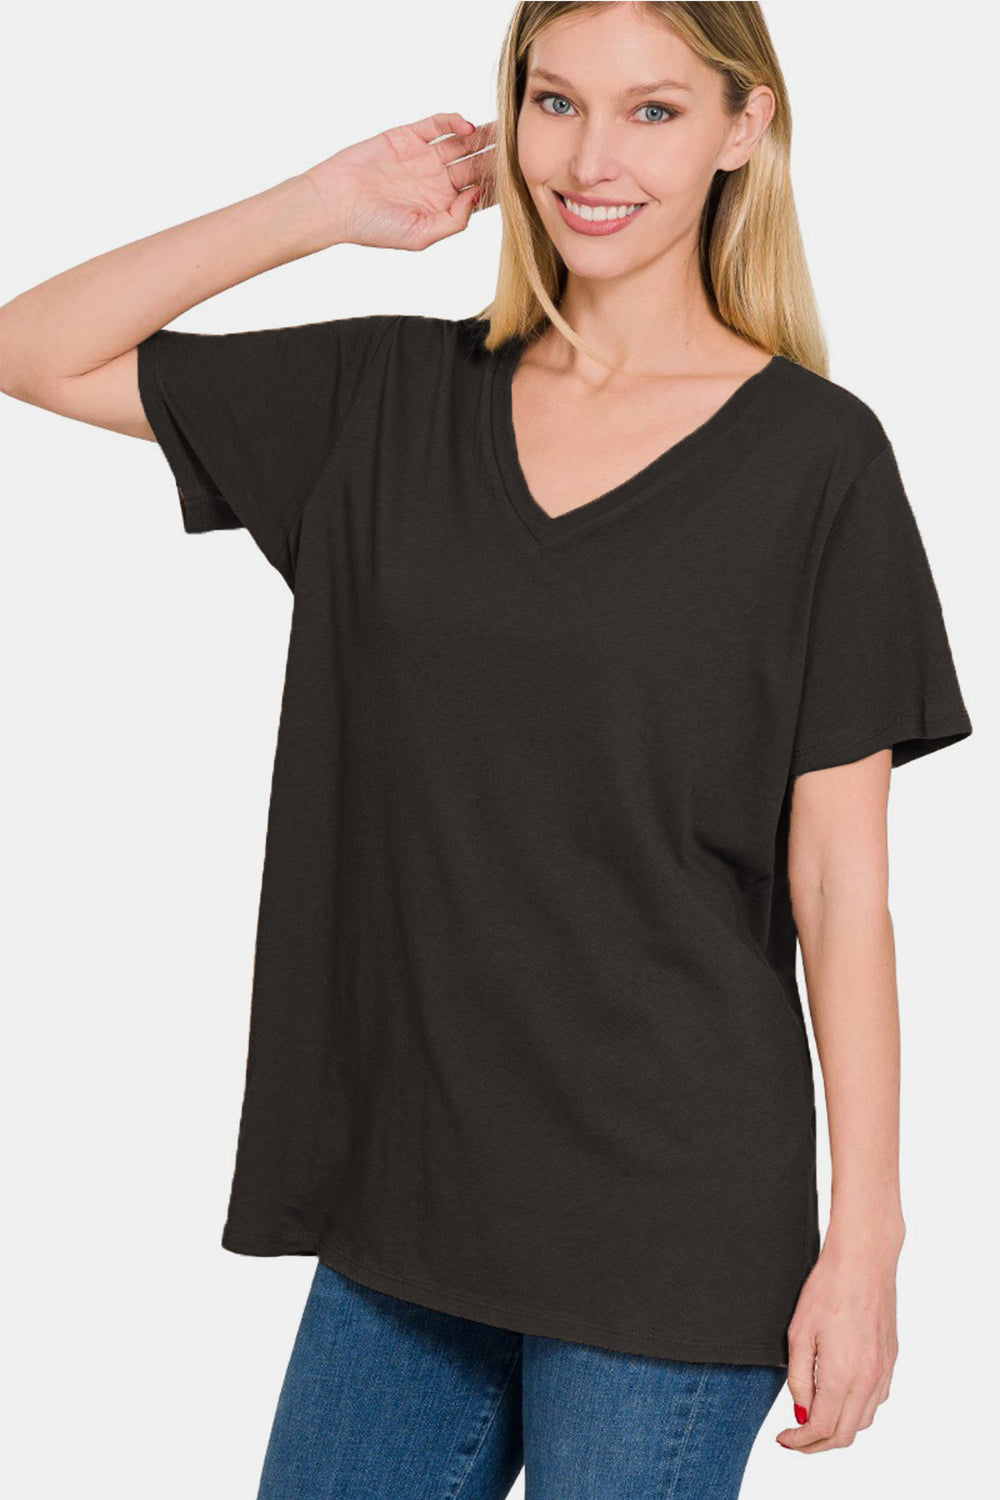 Zenana Full Size V-Neck Short Sleeve T-Shirt Dresses & Tops